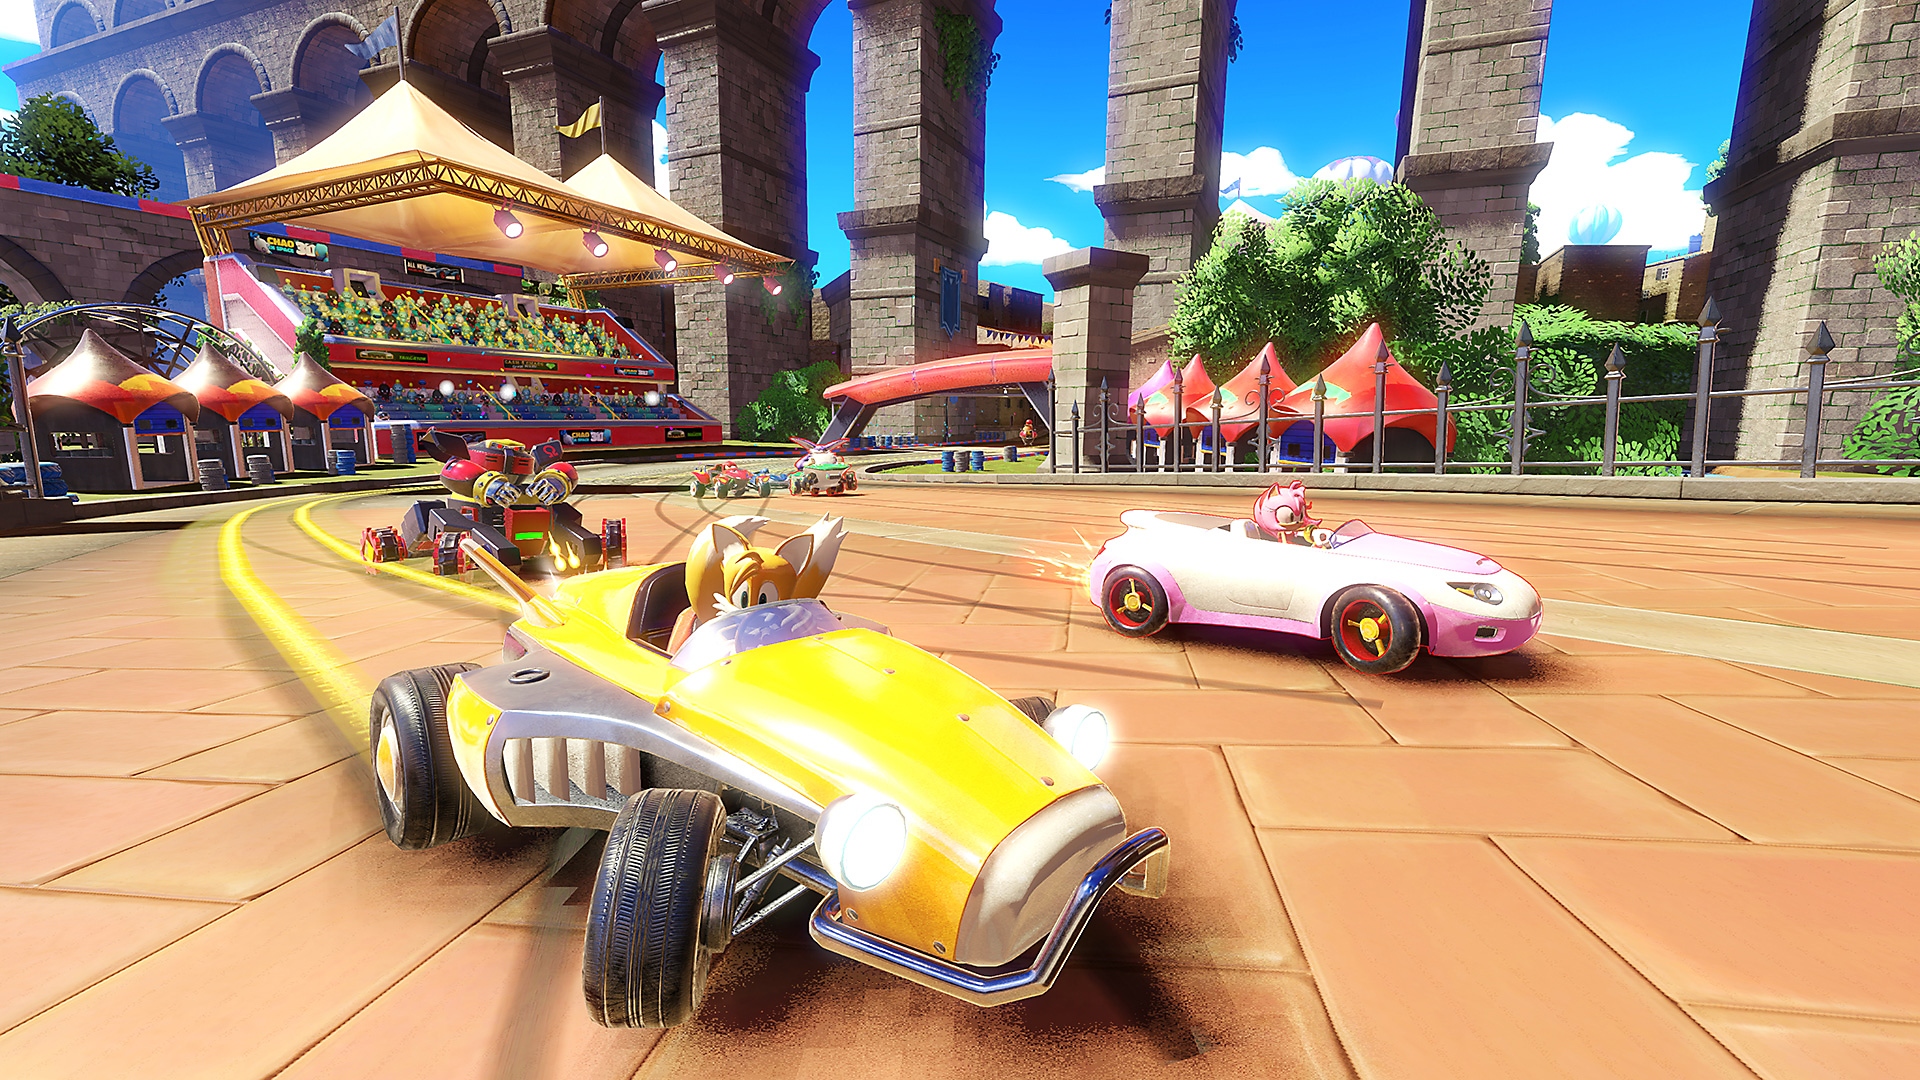 Captura de pantalla de Team Sonic Racing con Tails al mando de un coche amarillo